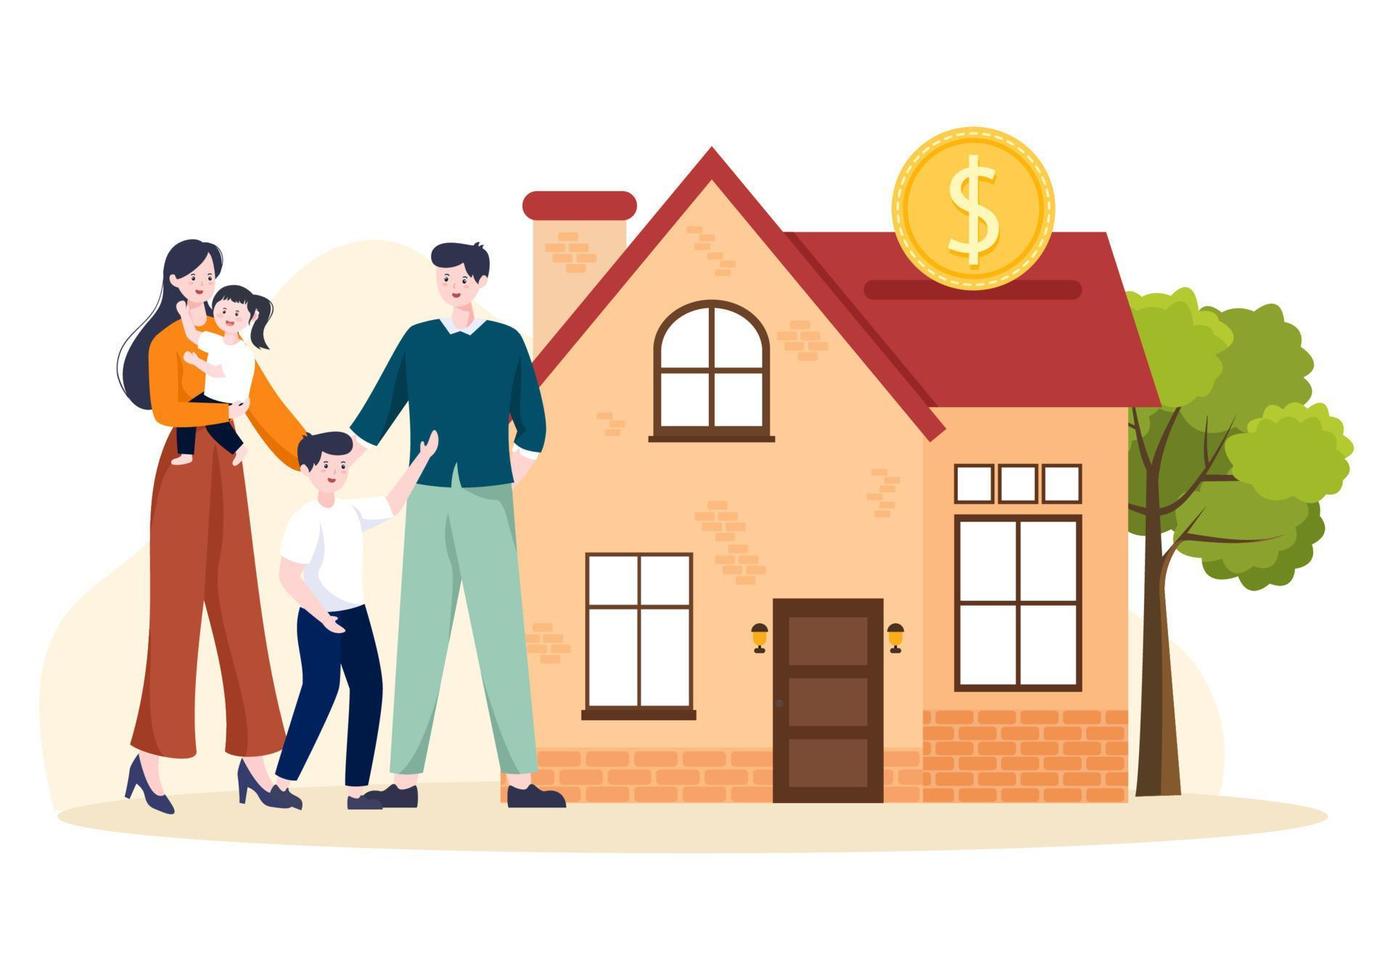 modelo de hipoteca ilustração plana de desenhos animados desenhados à mão de dívida de crédito a prazo por empréstimo à habitação ou investimento de dinheiro para design de propriedade imobiliária vetor